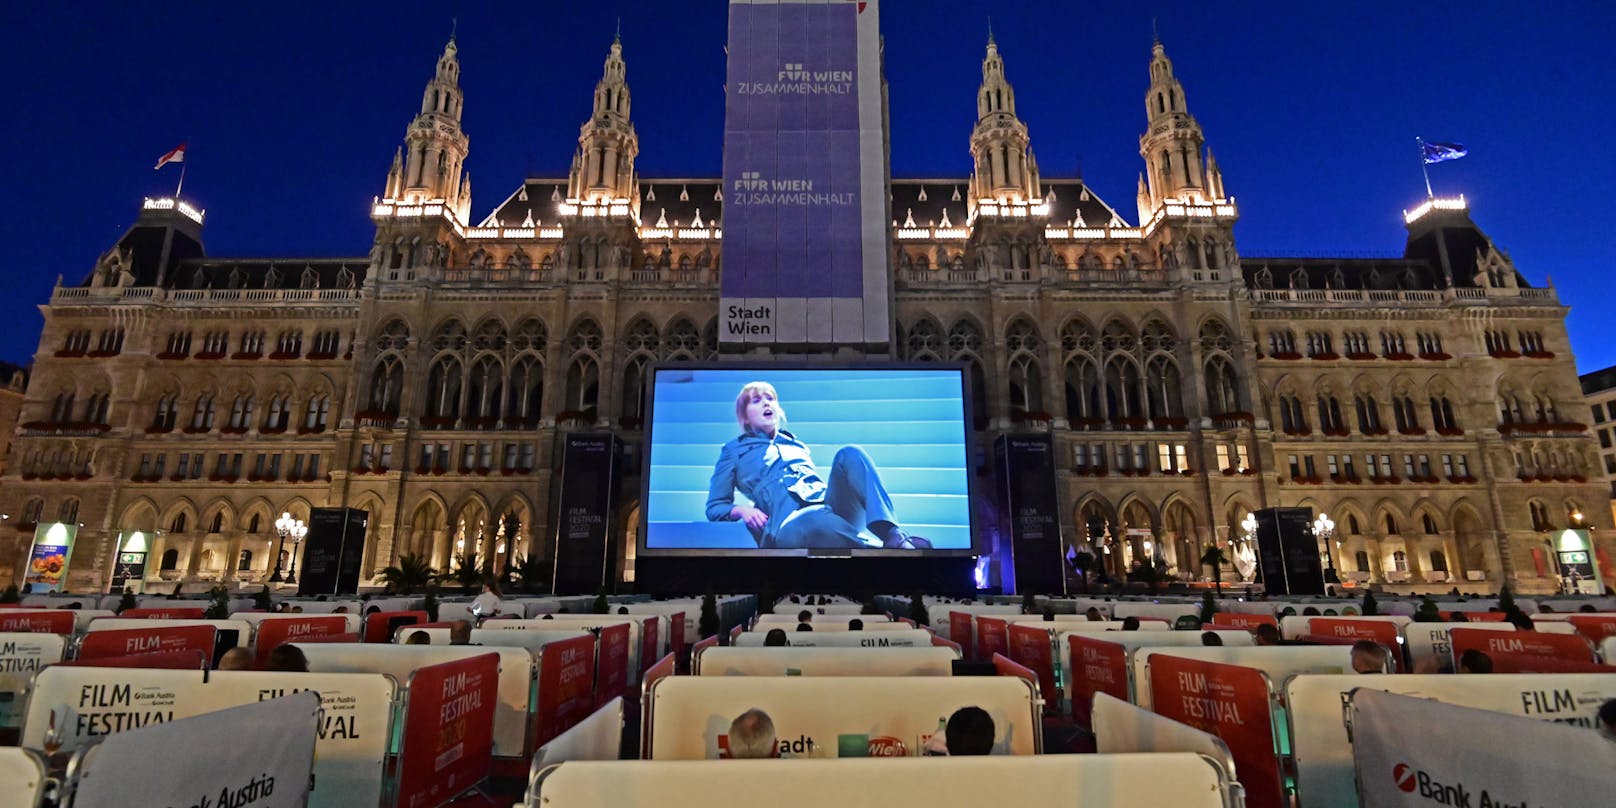 Das Film Festival auf dem Wiener Rathausplatz wurde am Samstag festlich eröffnet.